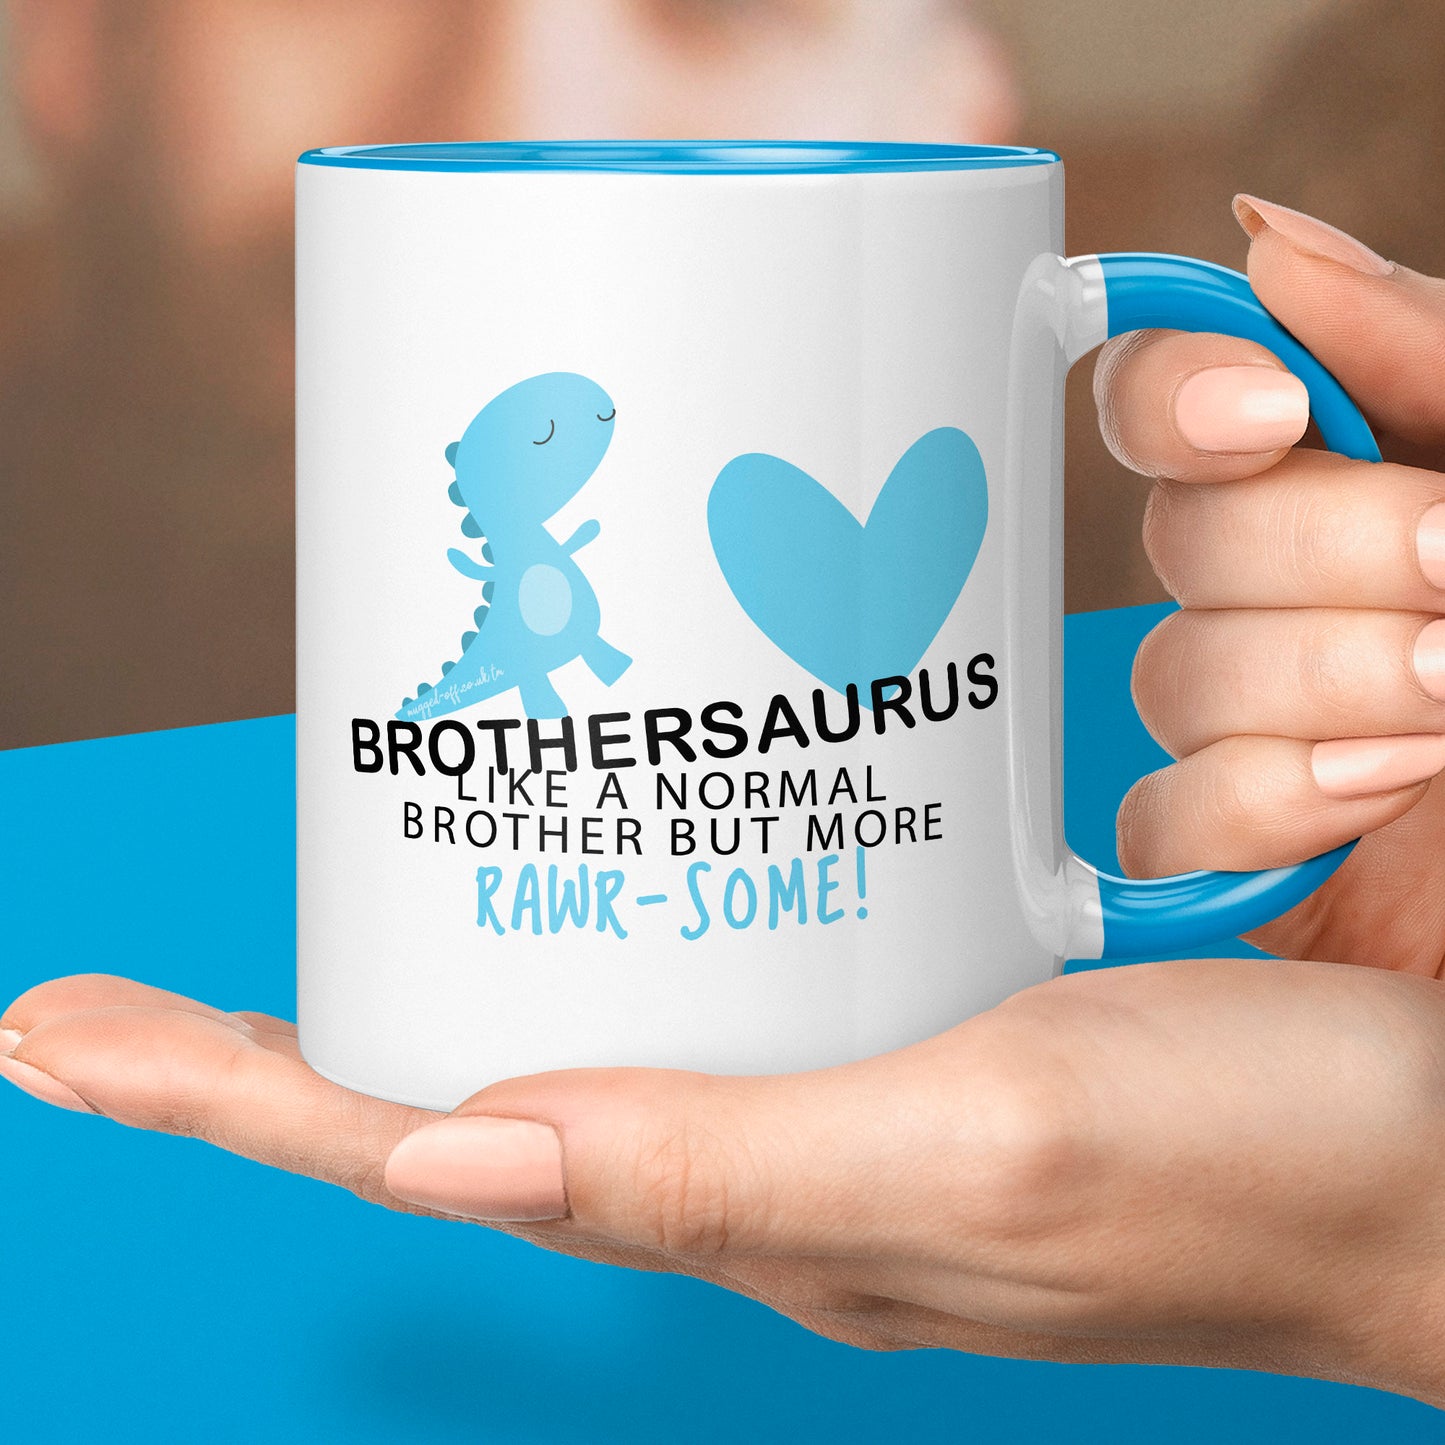 Brother presents, Funny Brother Mug Gift - Brothersaurus Mug Cup Cups Xmas Birthday Christmas Tea Coffee Mugs